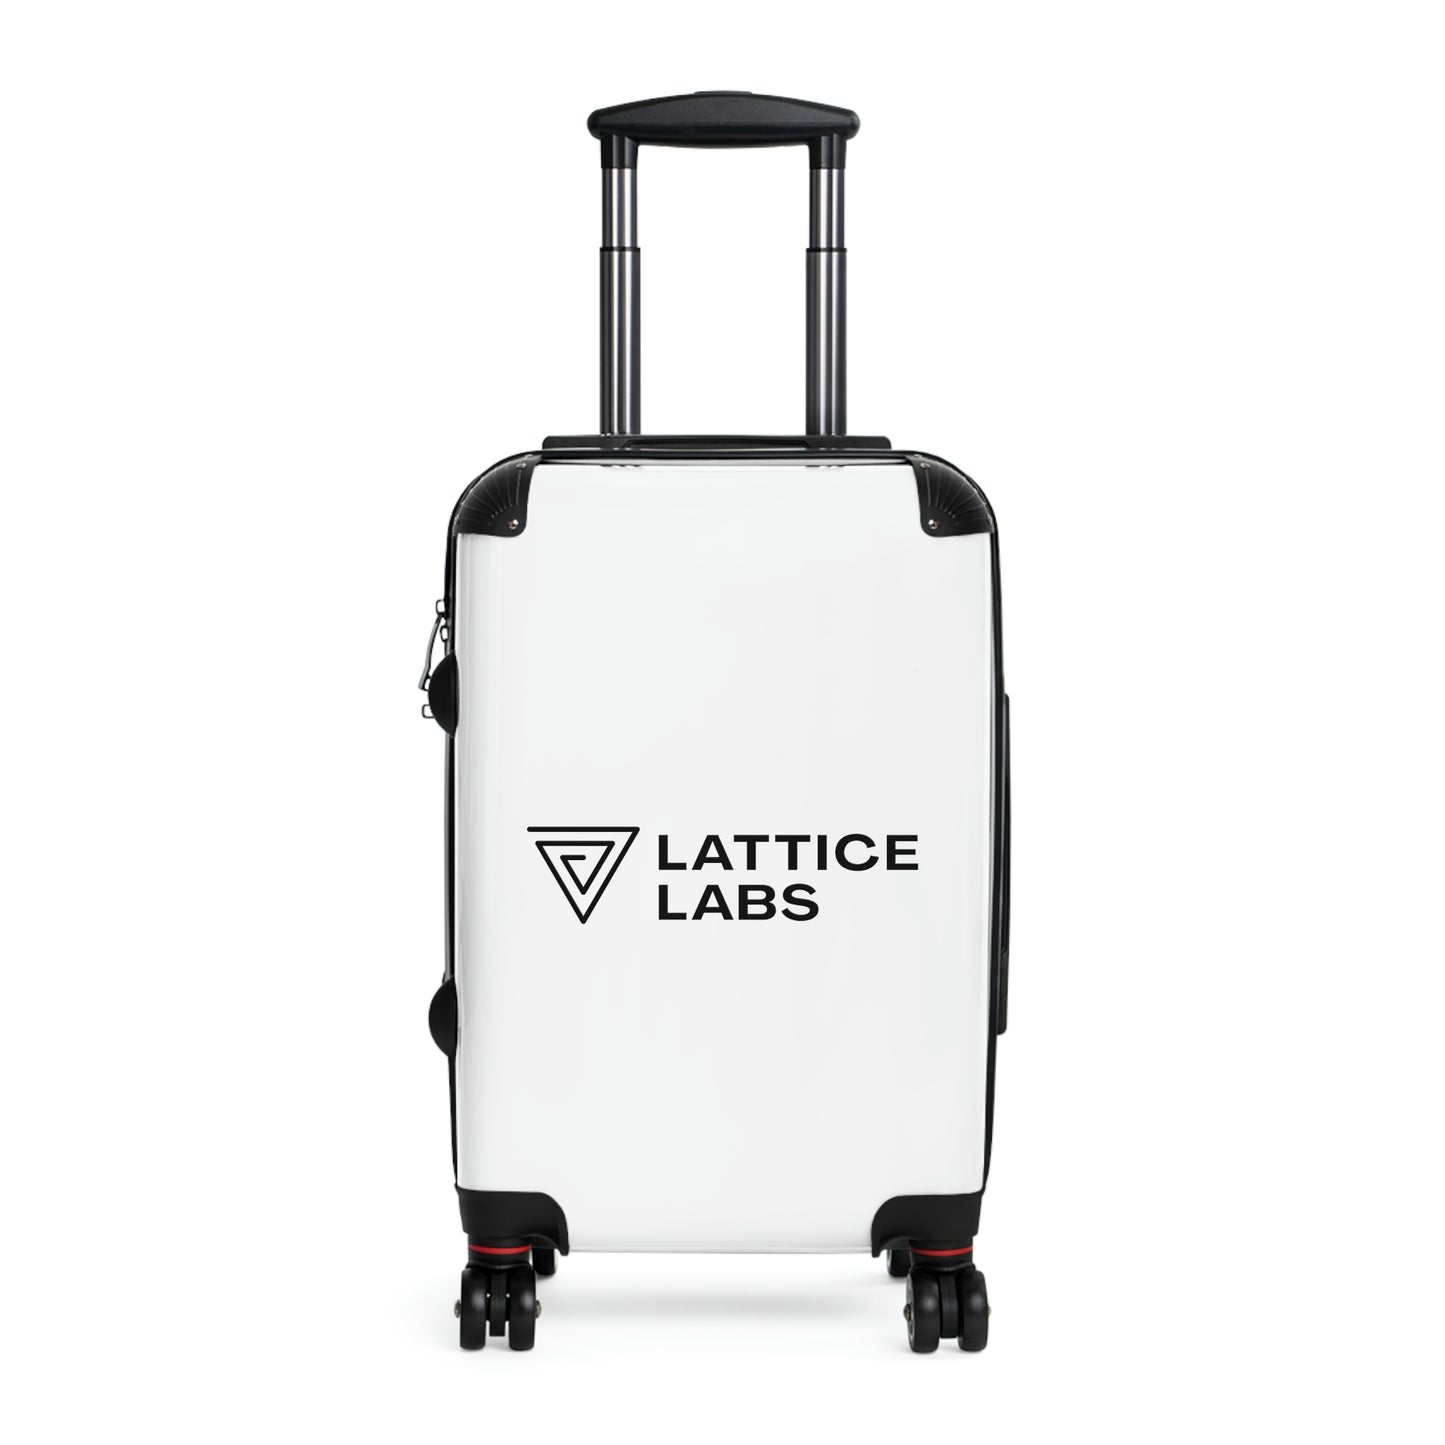 Lattice Labs Suitcase